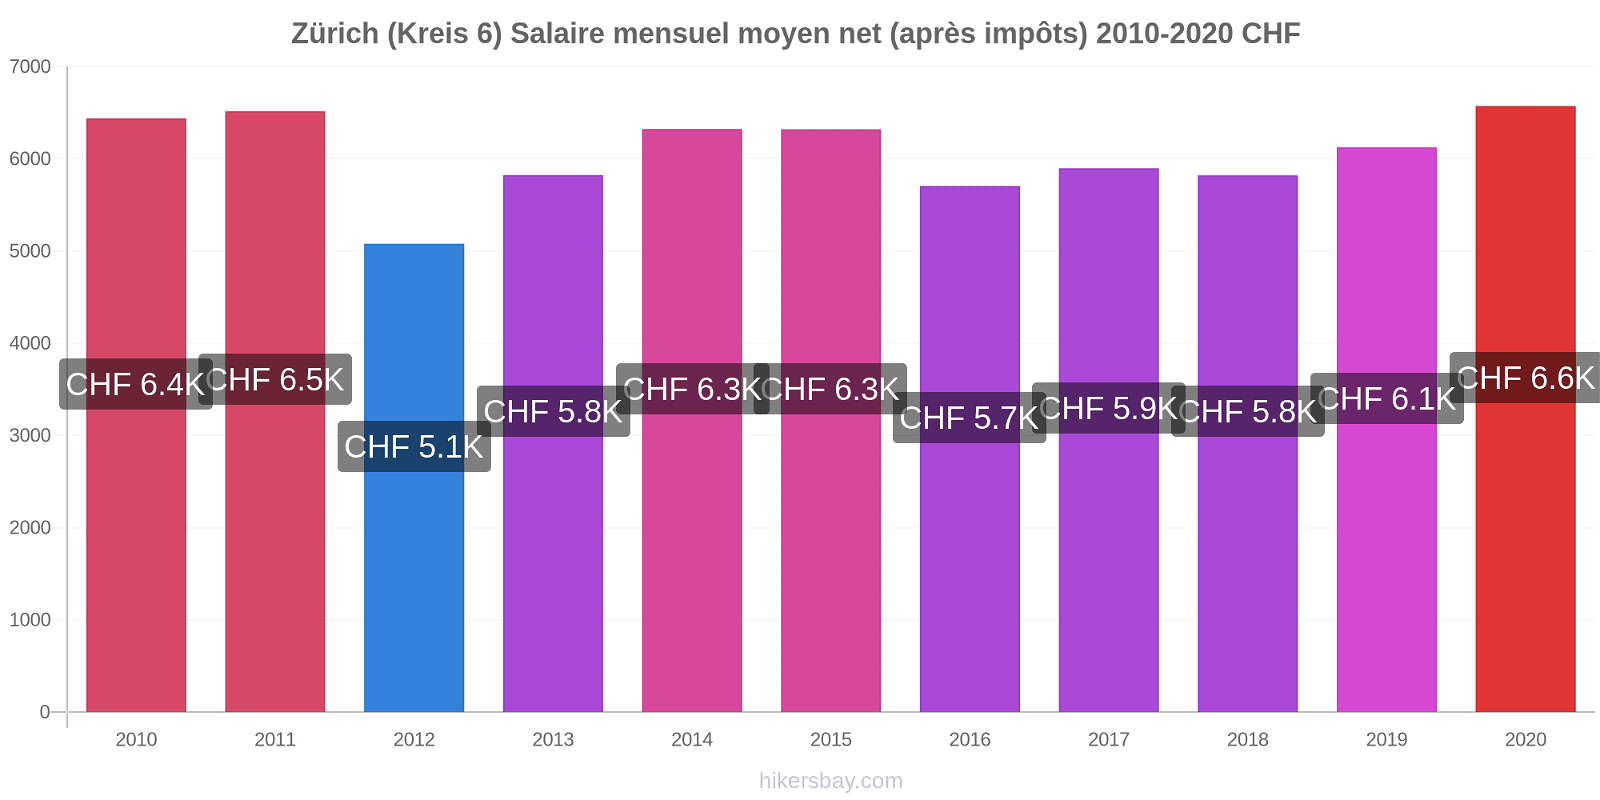 Zürich (Kreis 6) changements de prix Salaire mensuel Net (après impôts) hikersbay.com